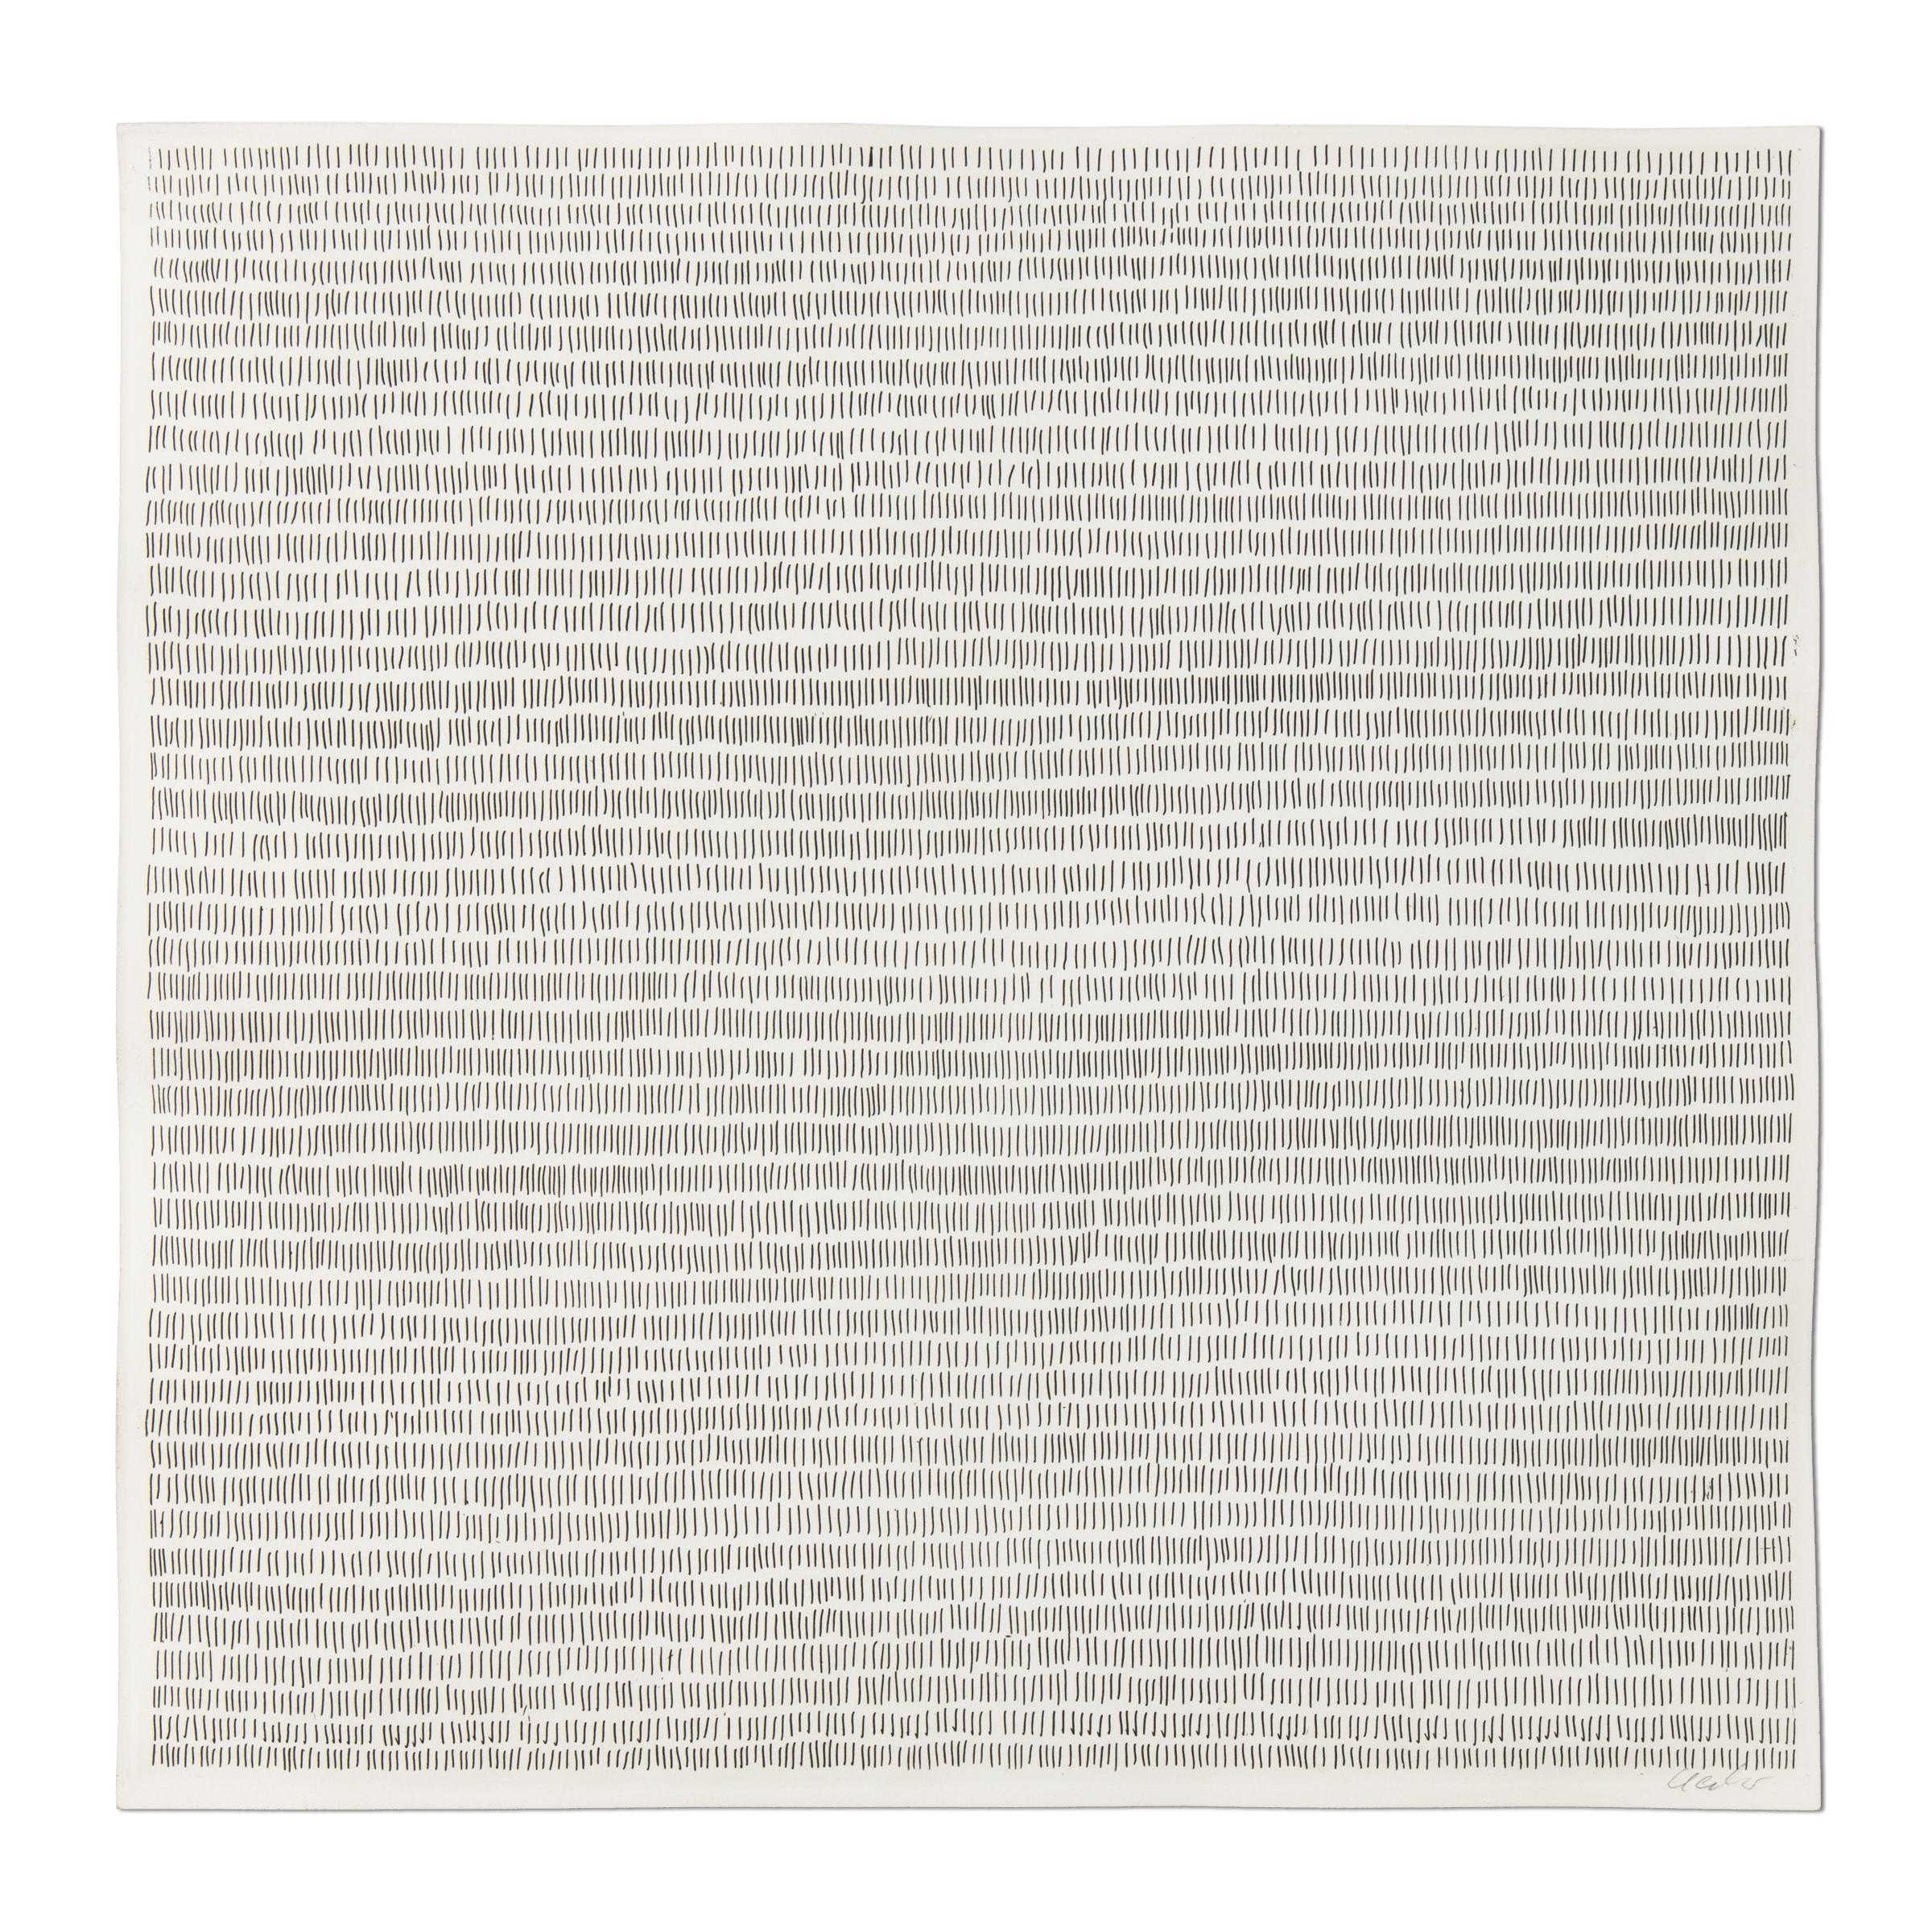 Günther Uecker (Allemand, né en 1930)
Sans titre (du portefeuille Nagelbuch), 1970-1971
Support : Gravure sur papier vélin
Dimensions : 34,6 x 34,5 cm : 34,6 x 34,5 cm
Édition de 500 : signée à la main au crayon